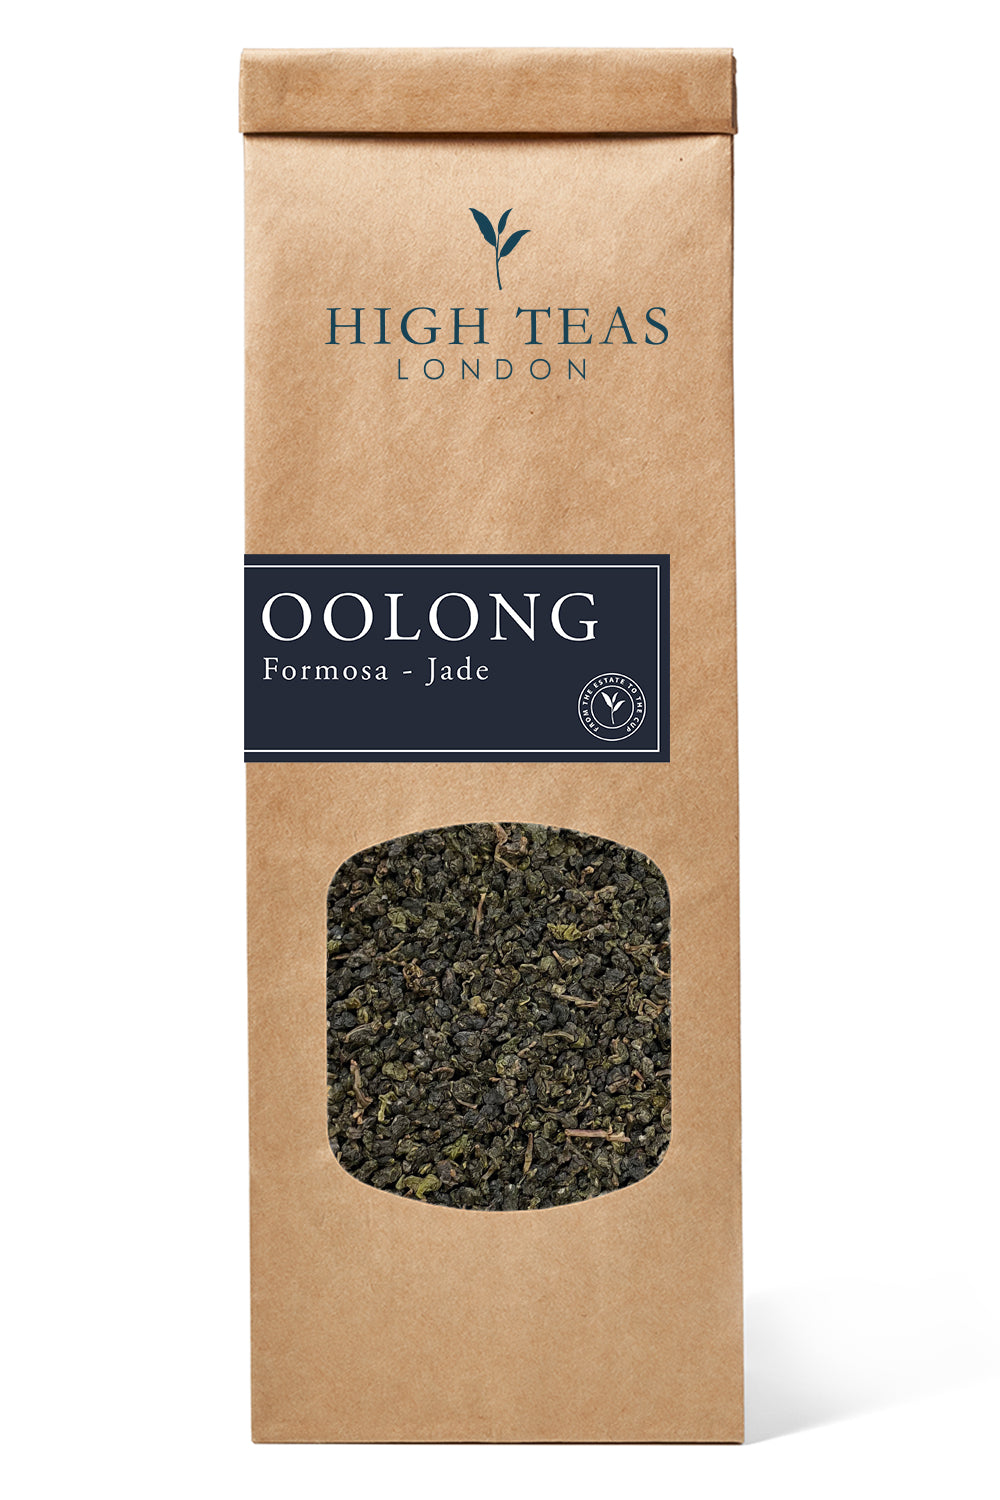 Formosa - Jade Oolong-50g-Loose Leaf Tea-High Teas